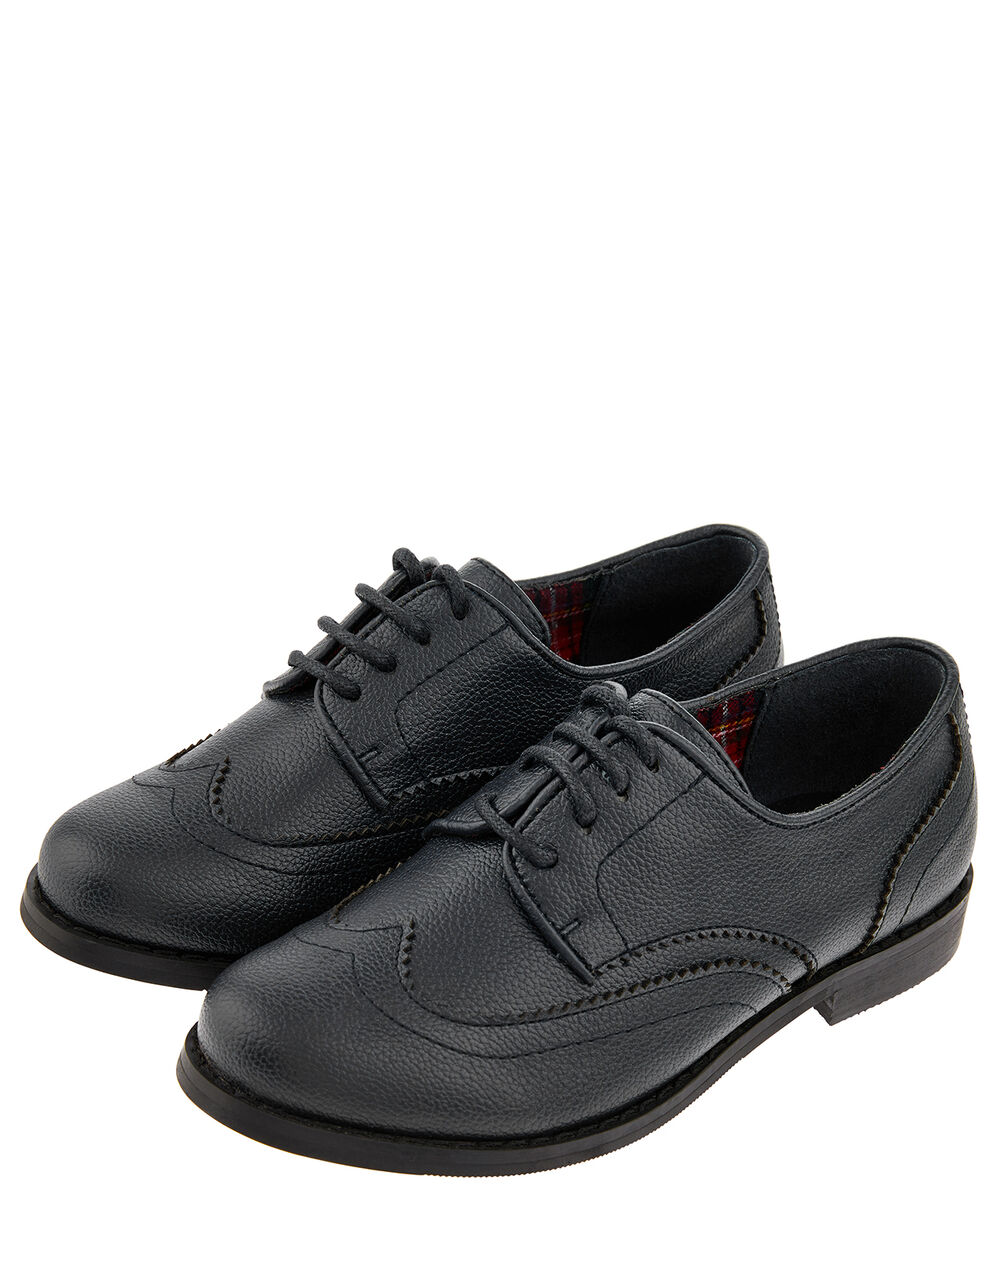 Children Children's Shoes & Sandals | Boys' Oxford Brogue Shoes Black - WI85508